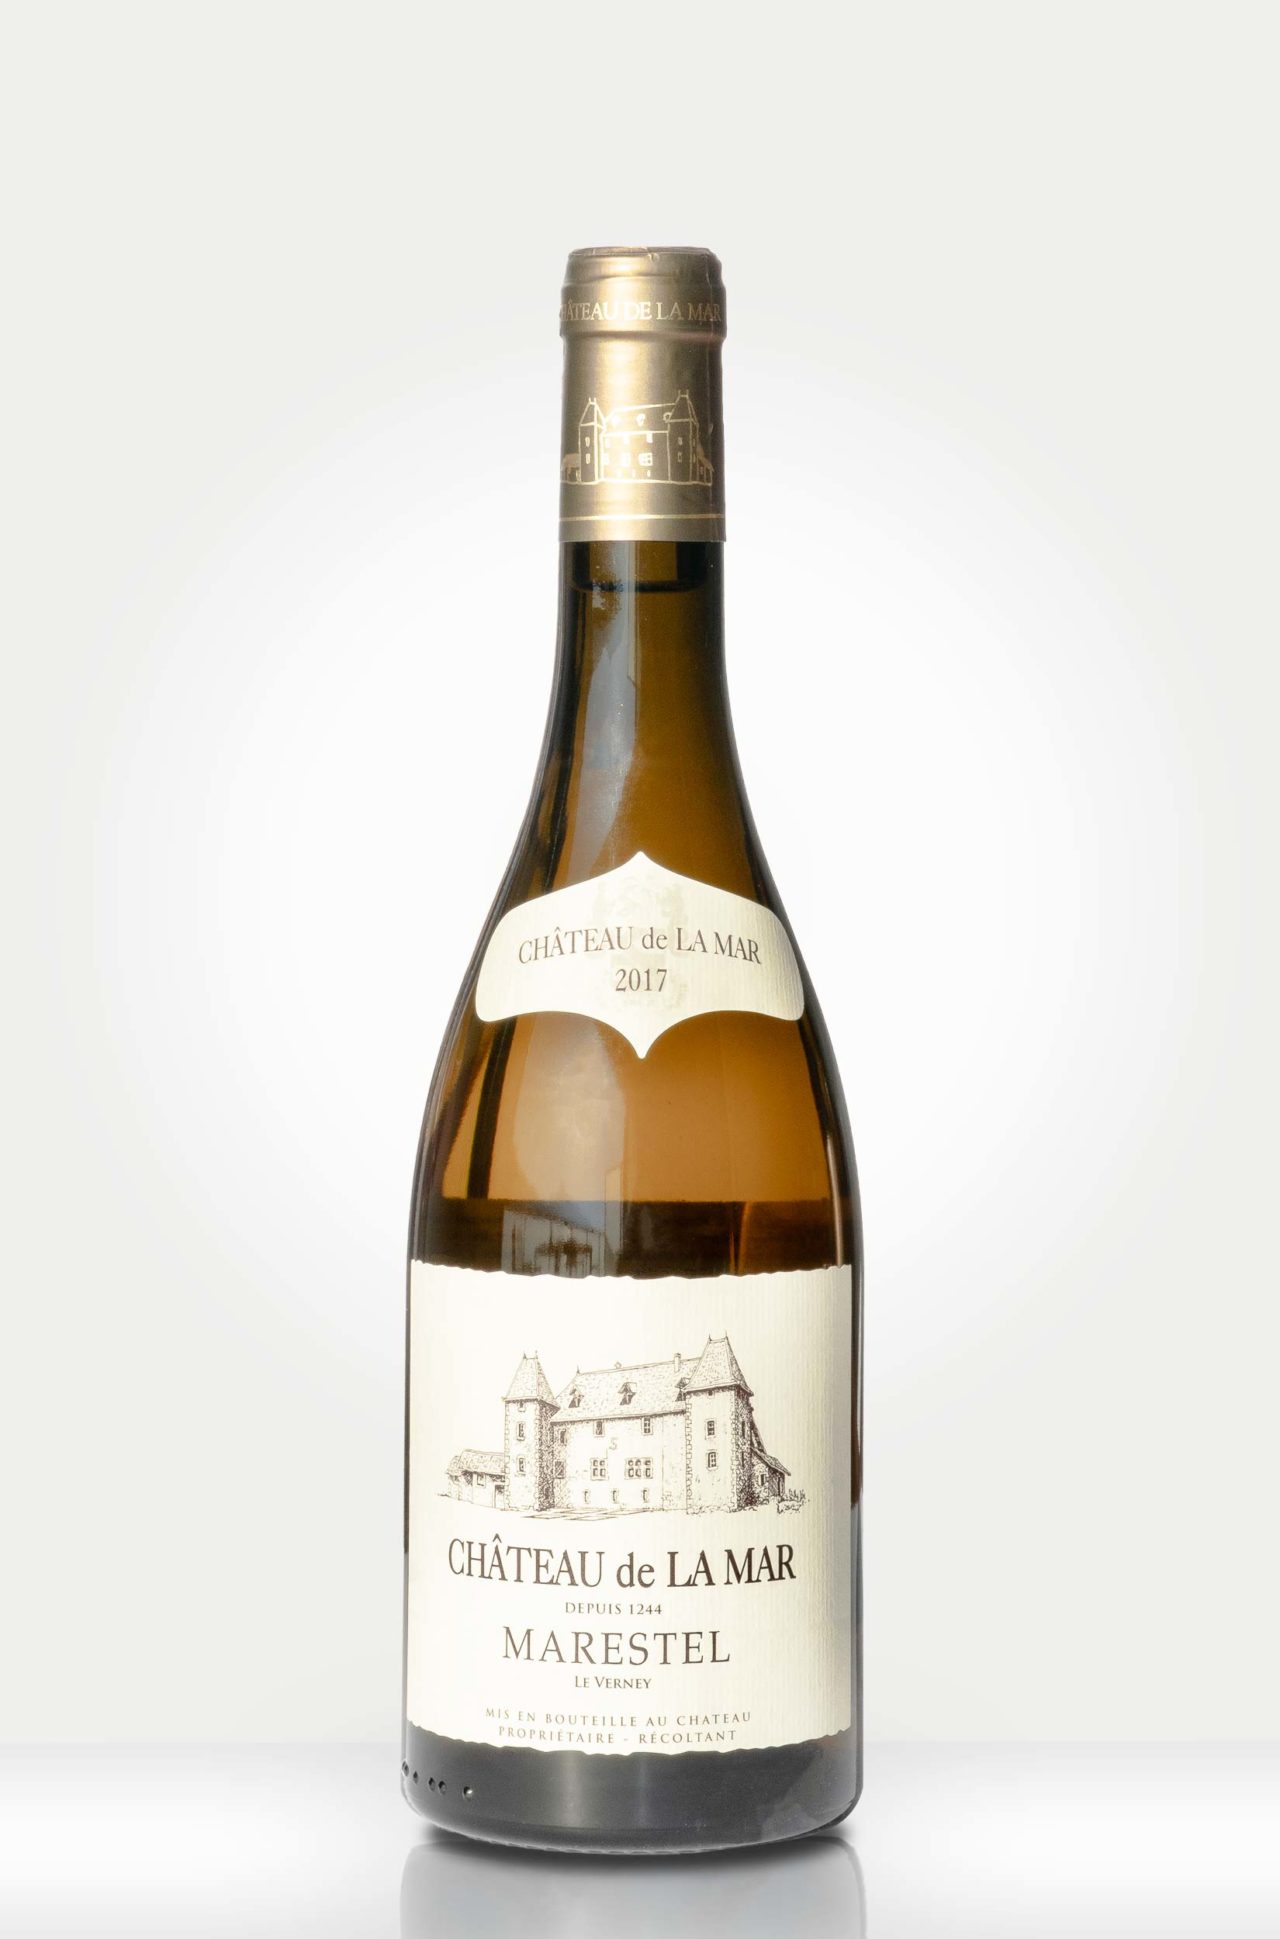 Bouteille Marestel La Verney - Vin blanc de Savoie